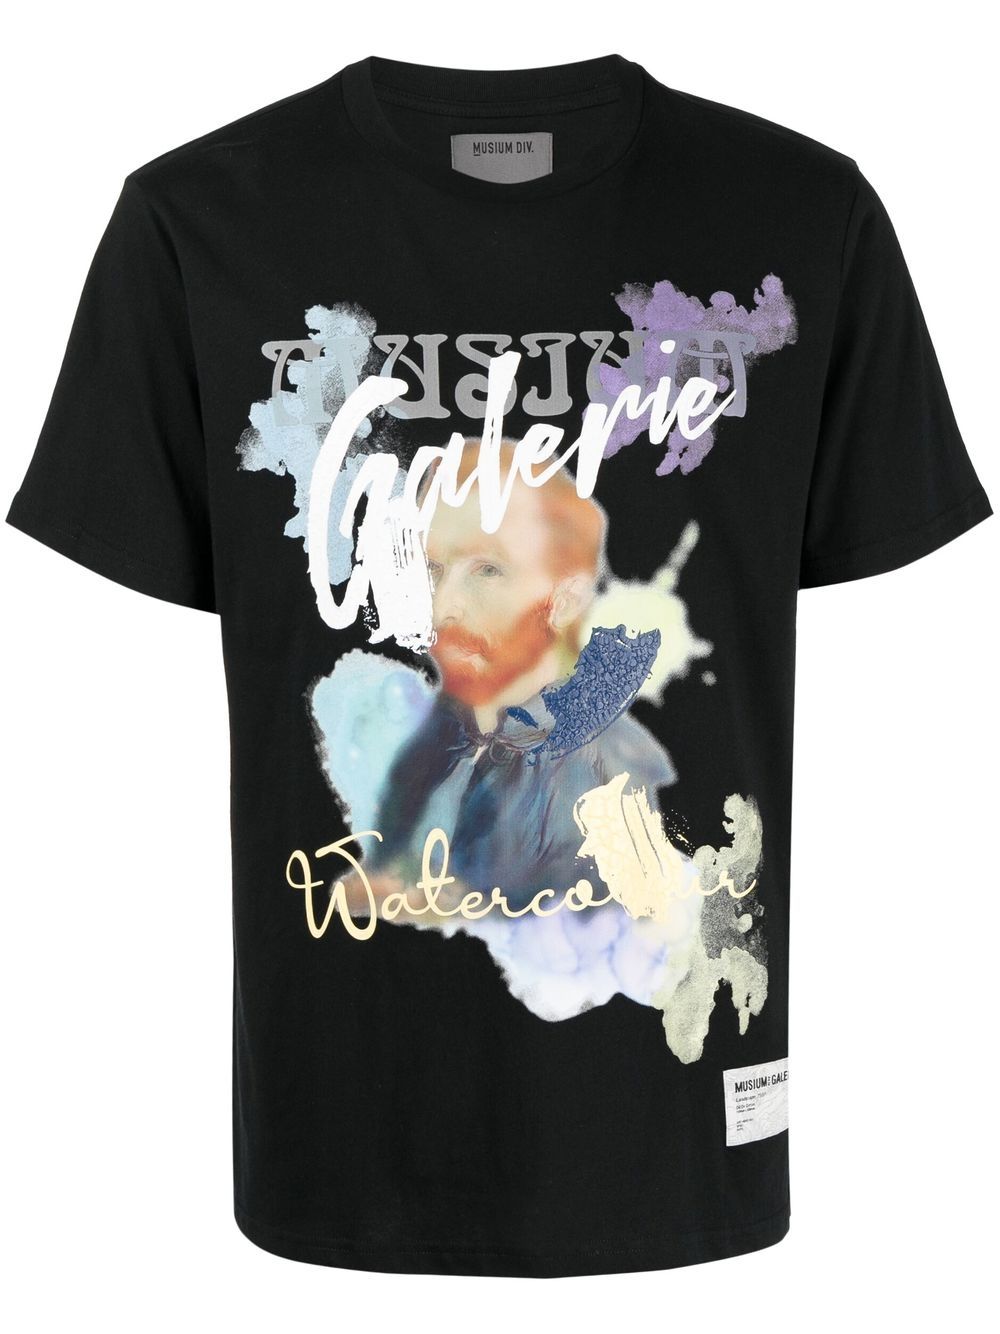 Musium Div. T-Shirt mit Van-Gogh-Print - Schwarz von Musium Div.